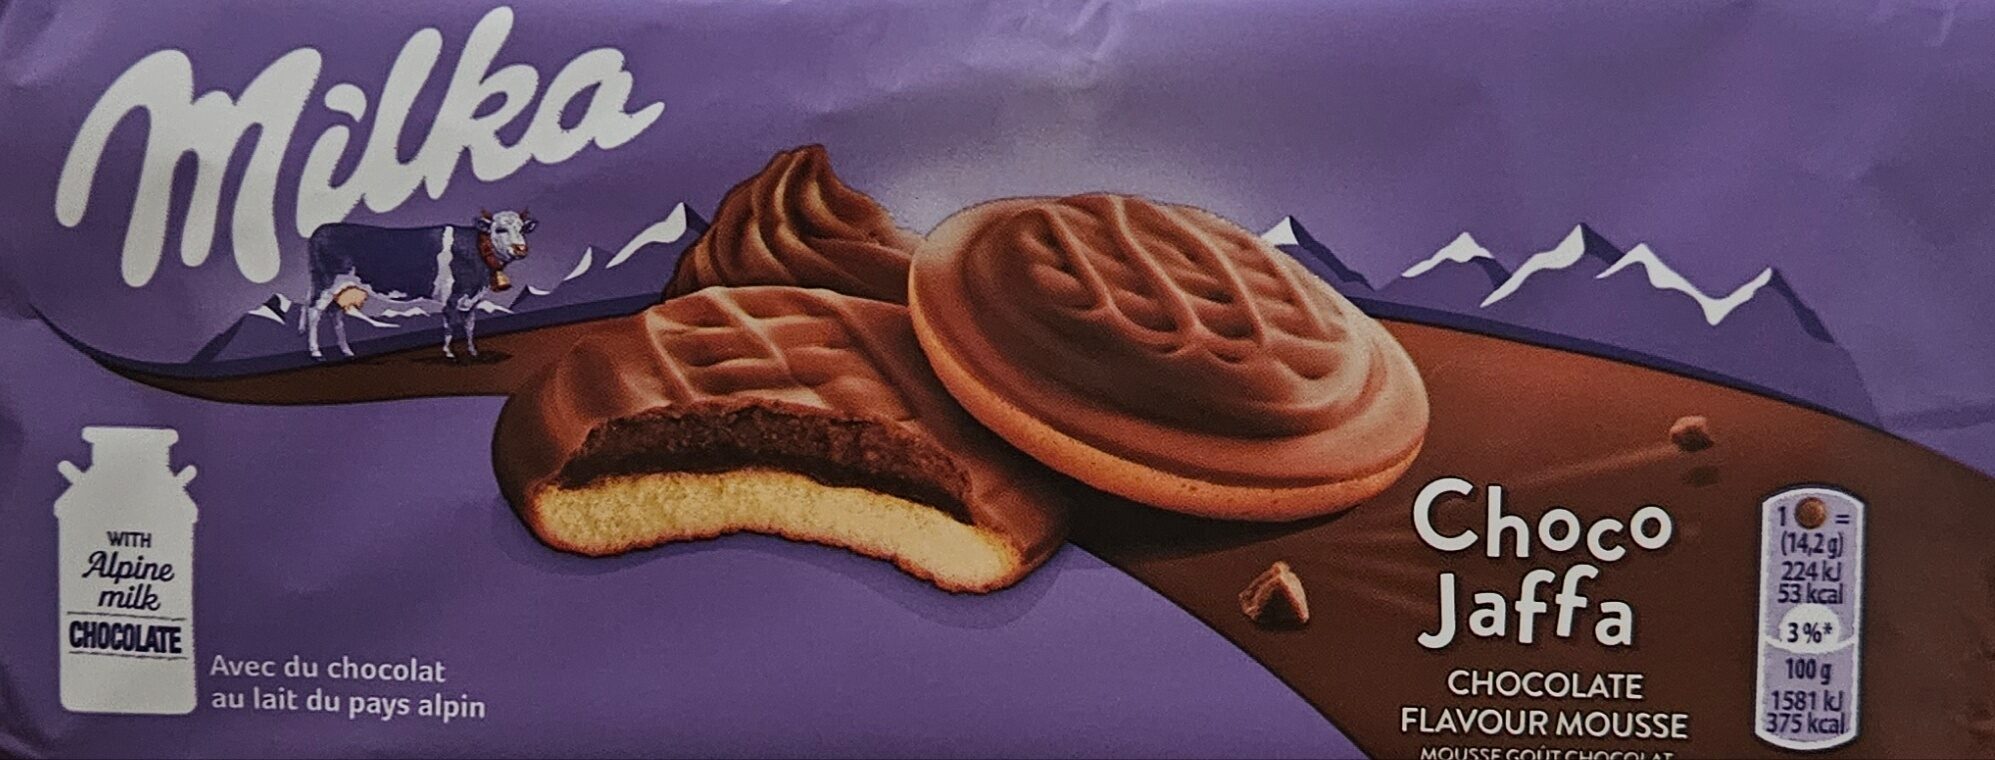 Бисквити с пълнеж с аромат на шоколад и покрити с млечен шоколад - Produkt - bg